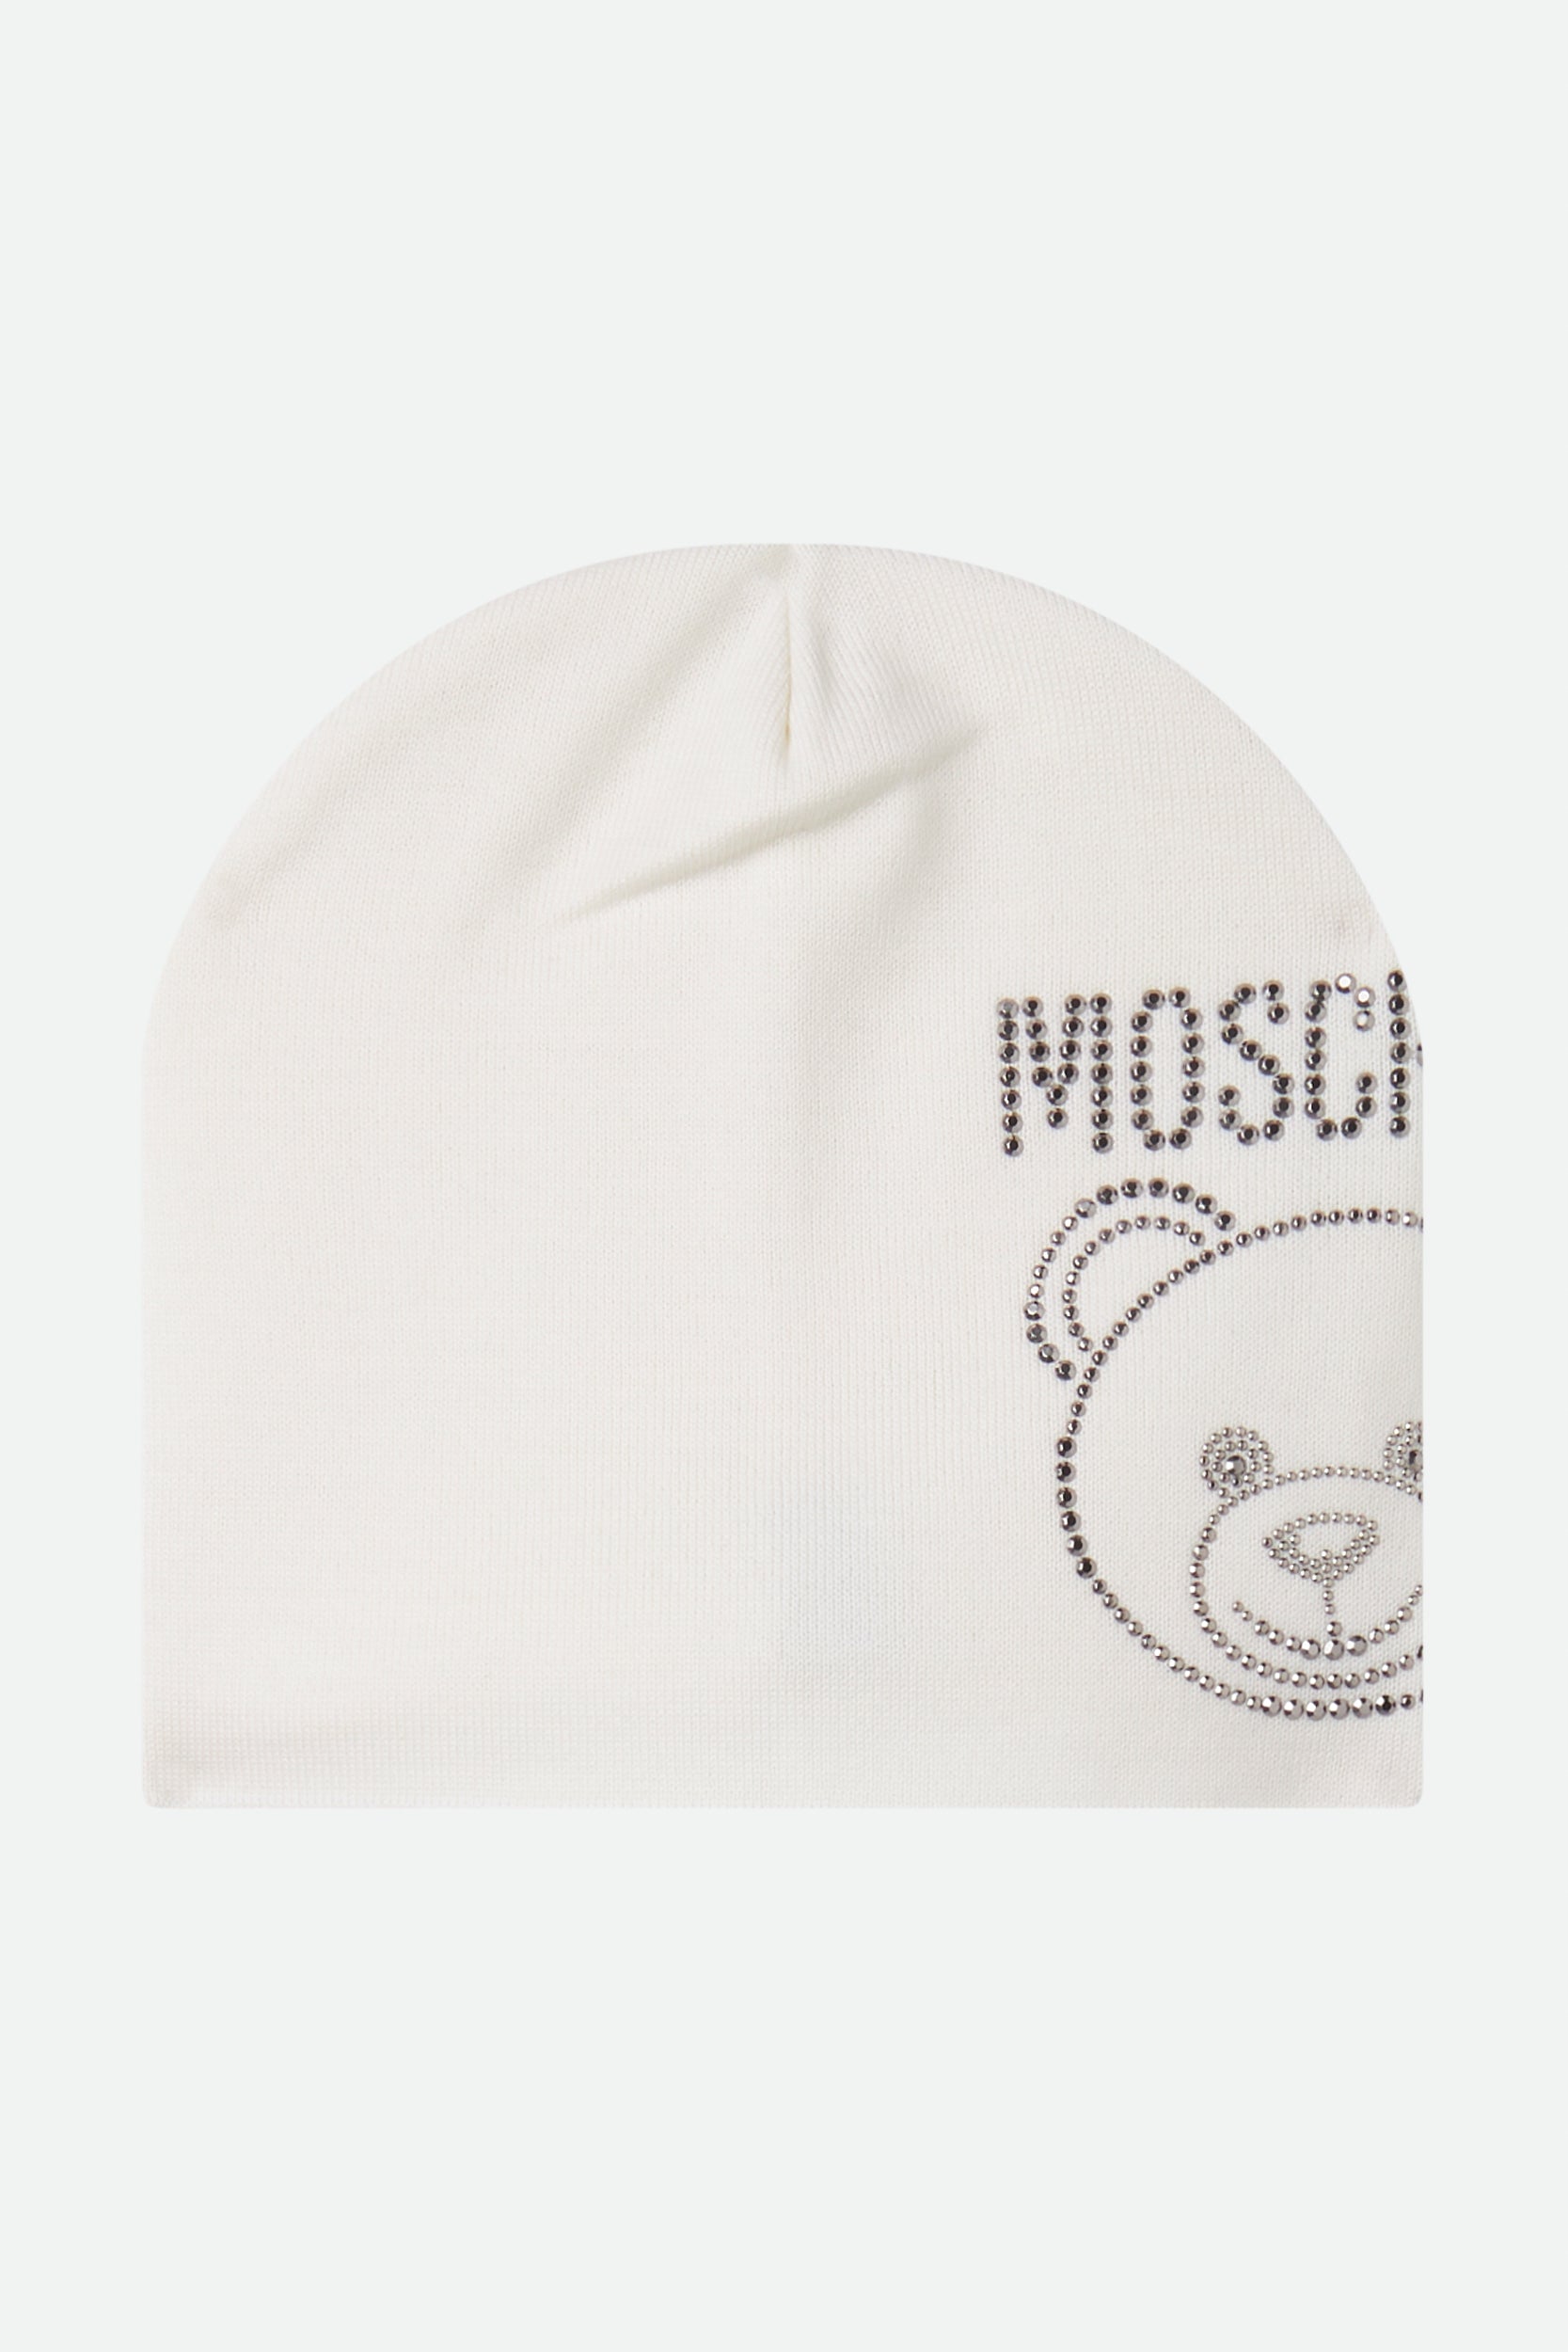 Moschino weißer Hut